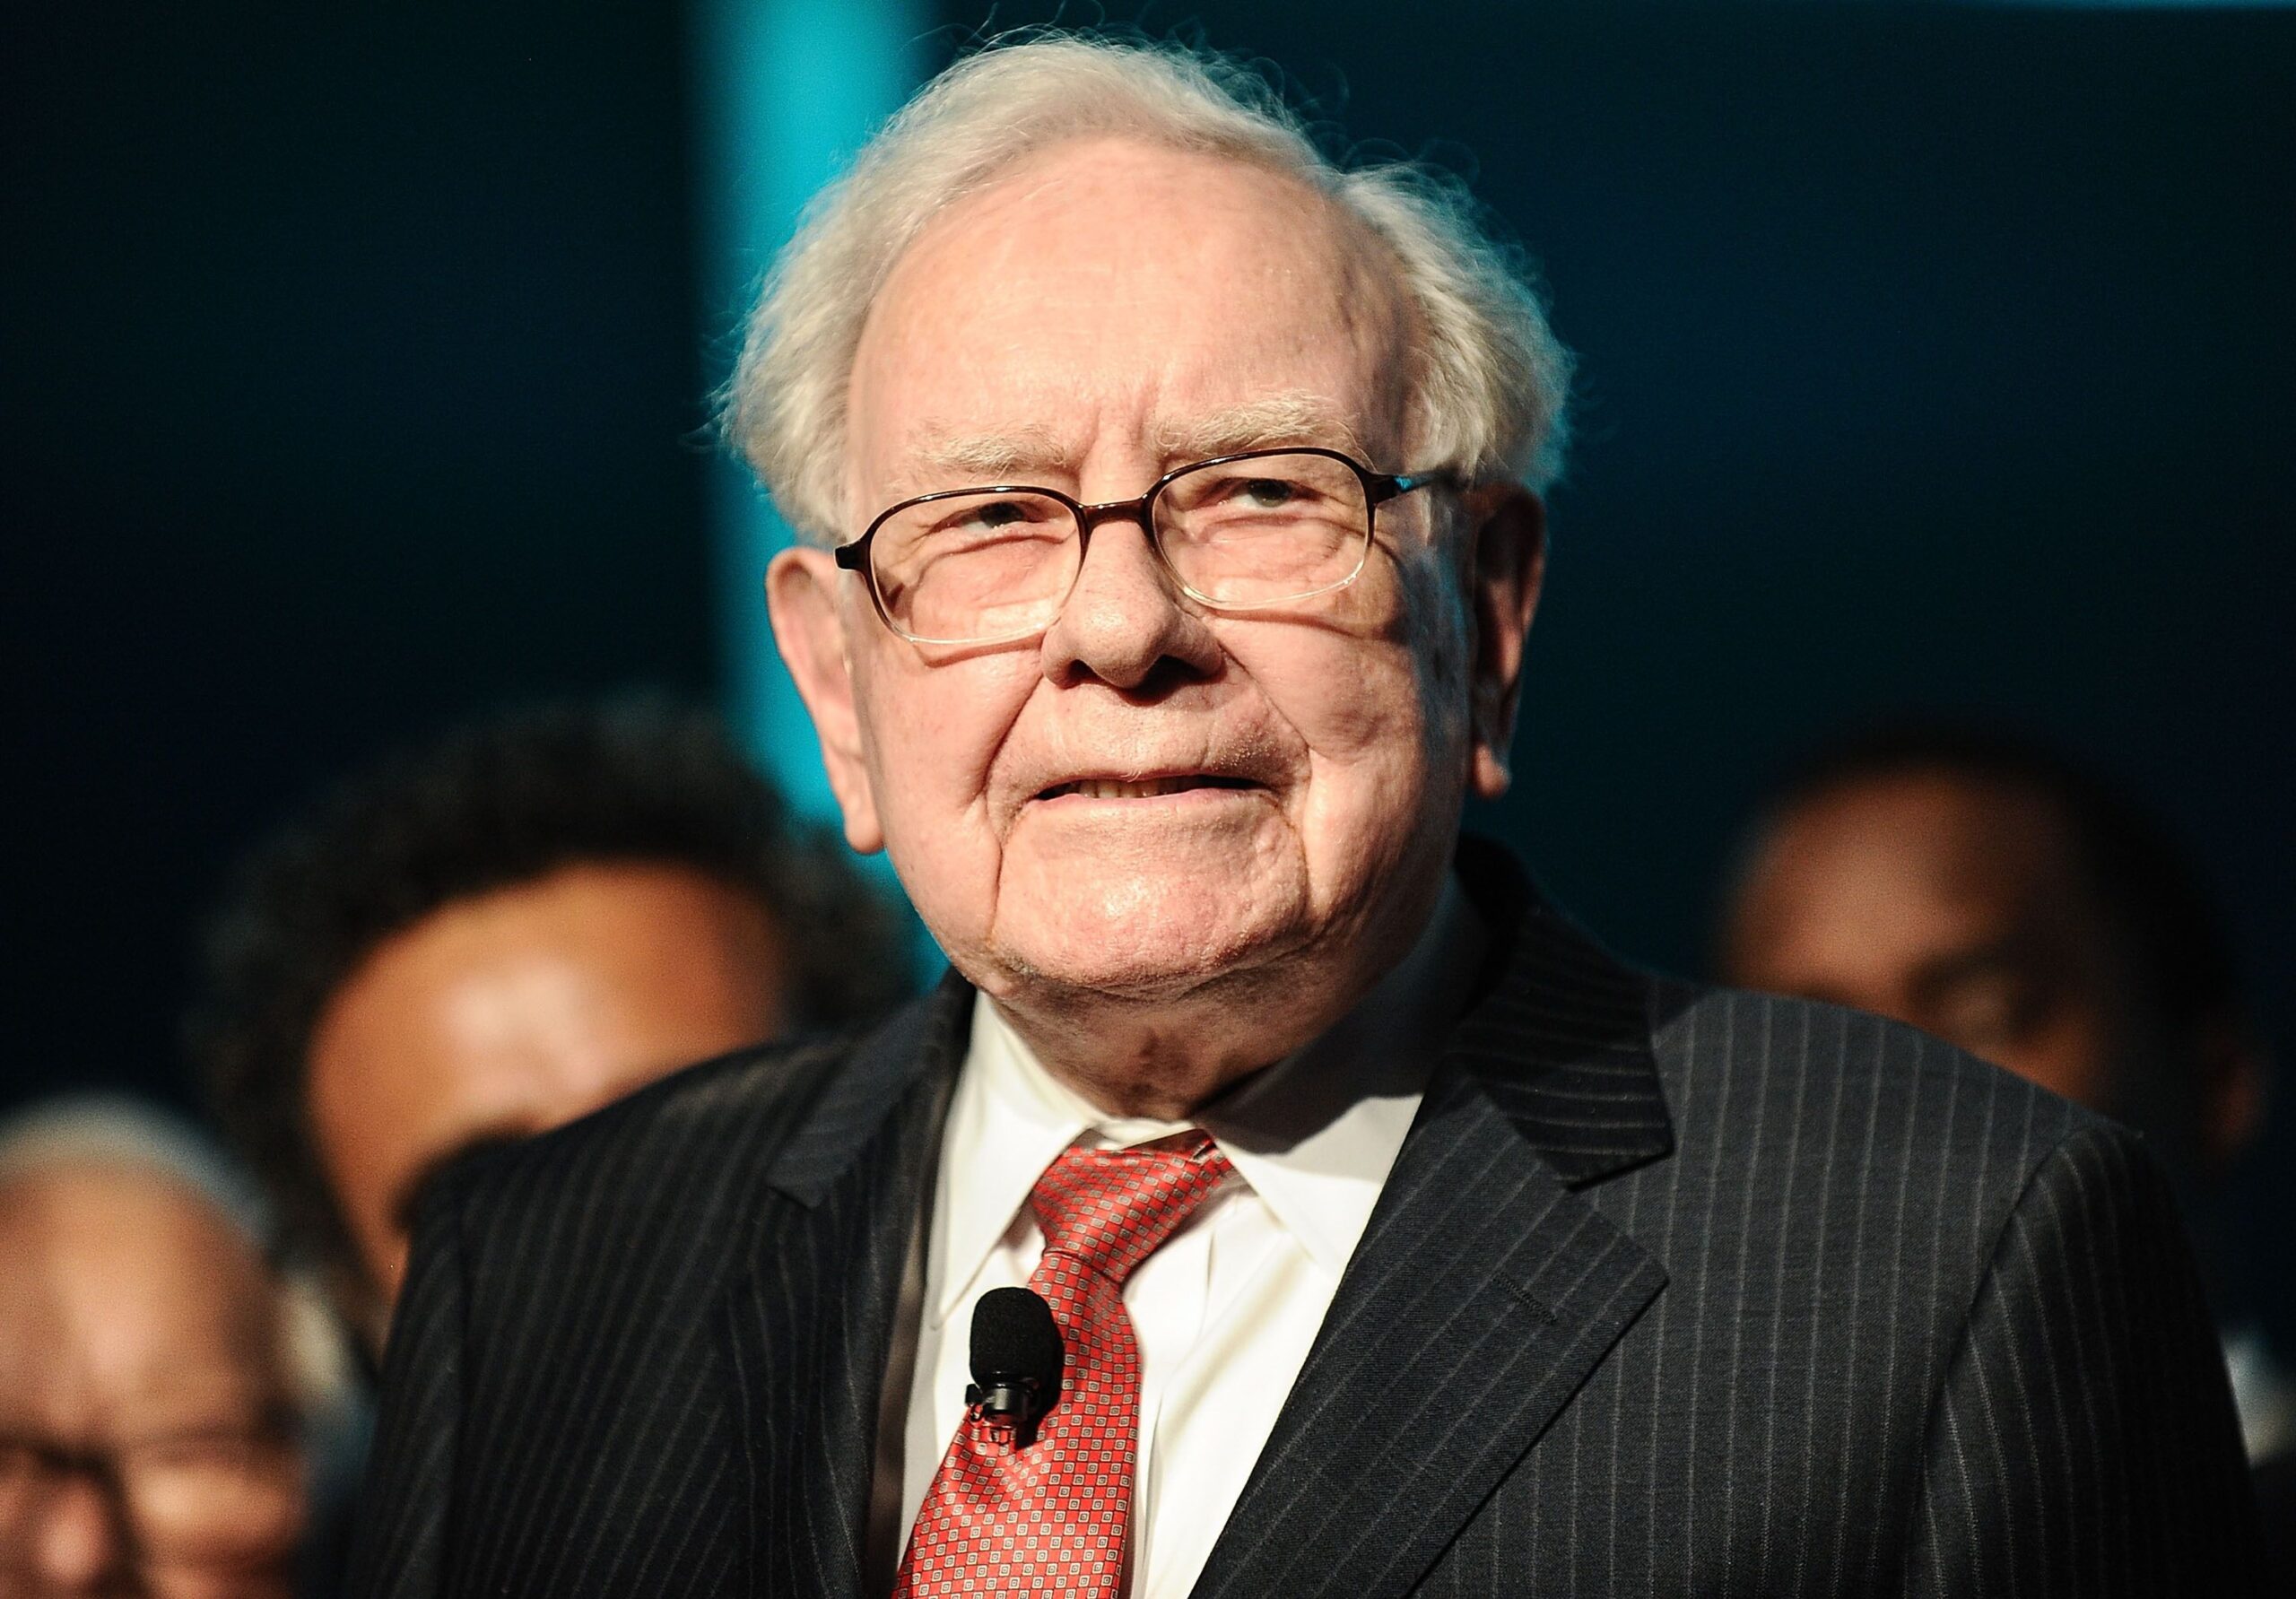 Warren Buffetts Favorite Asset Class besides stocks